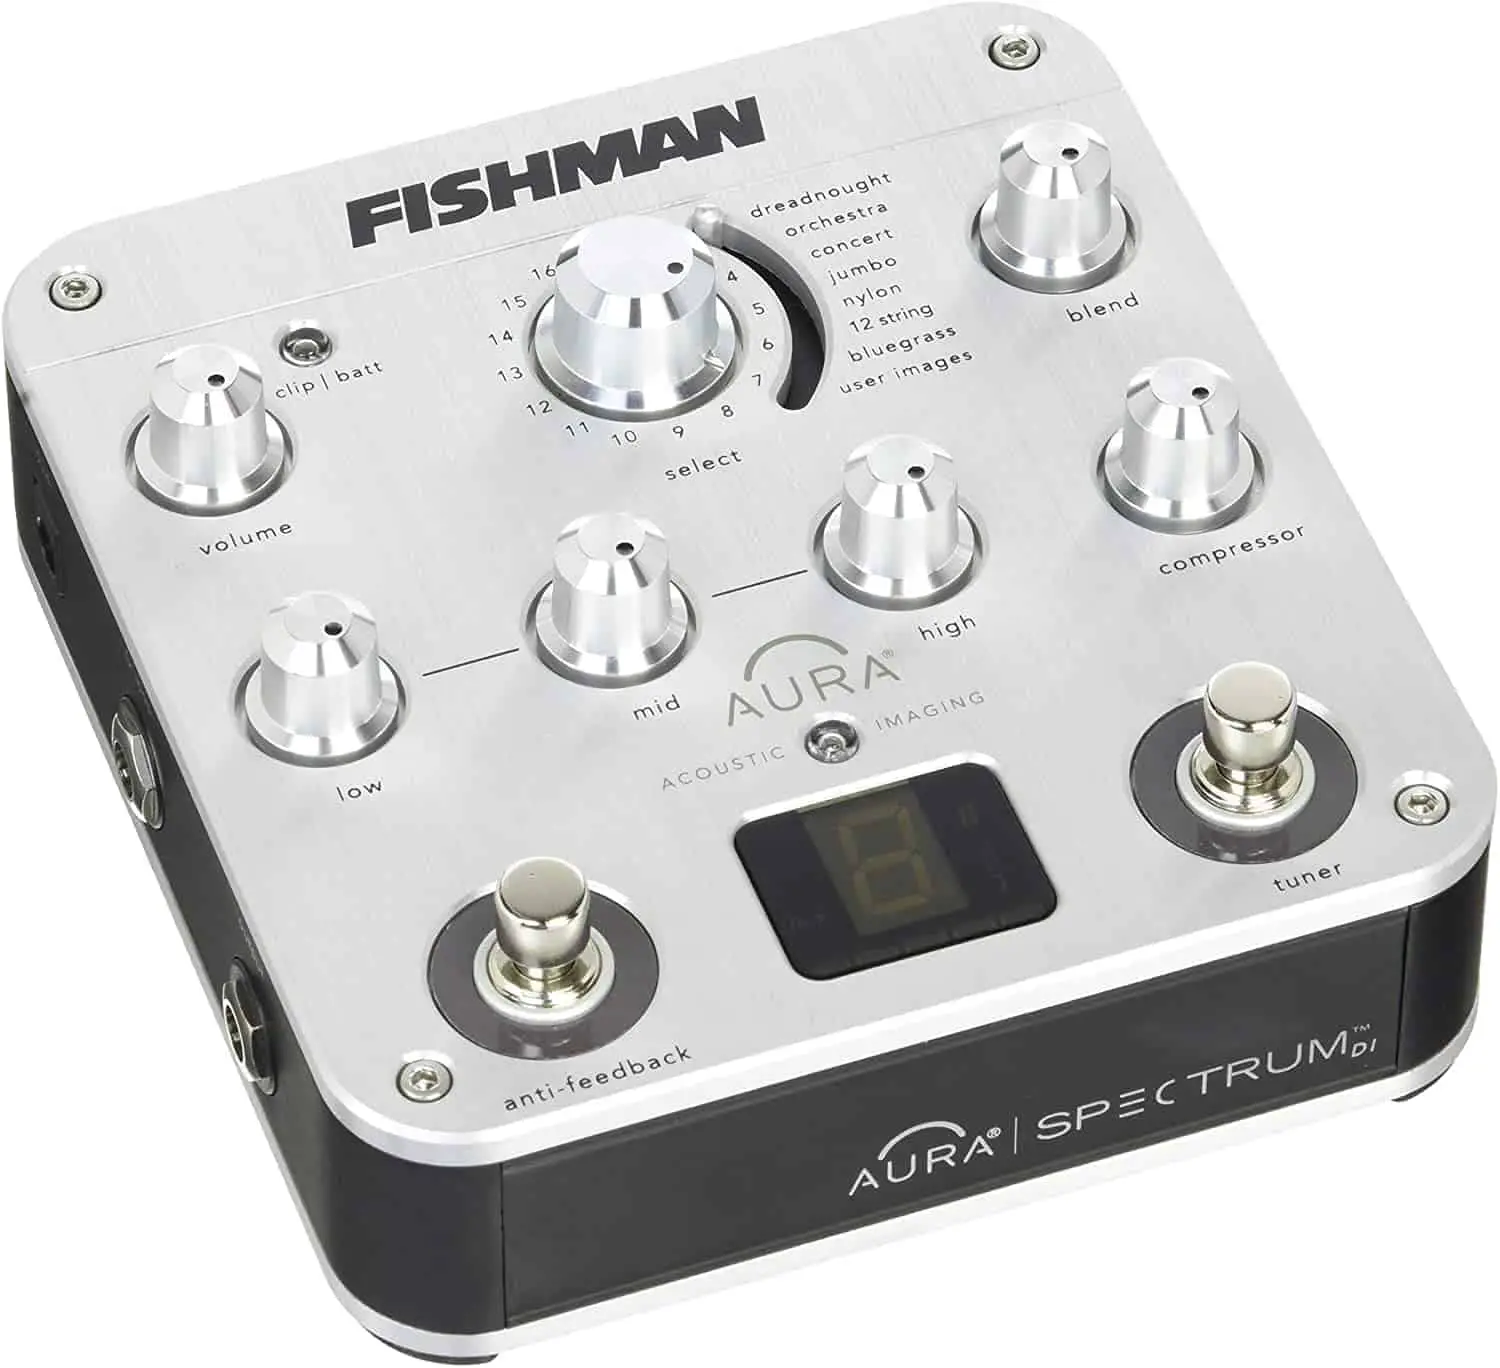 Miglior pedale di preamplificatore acusticu: Fishman Aura Spectrum DI